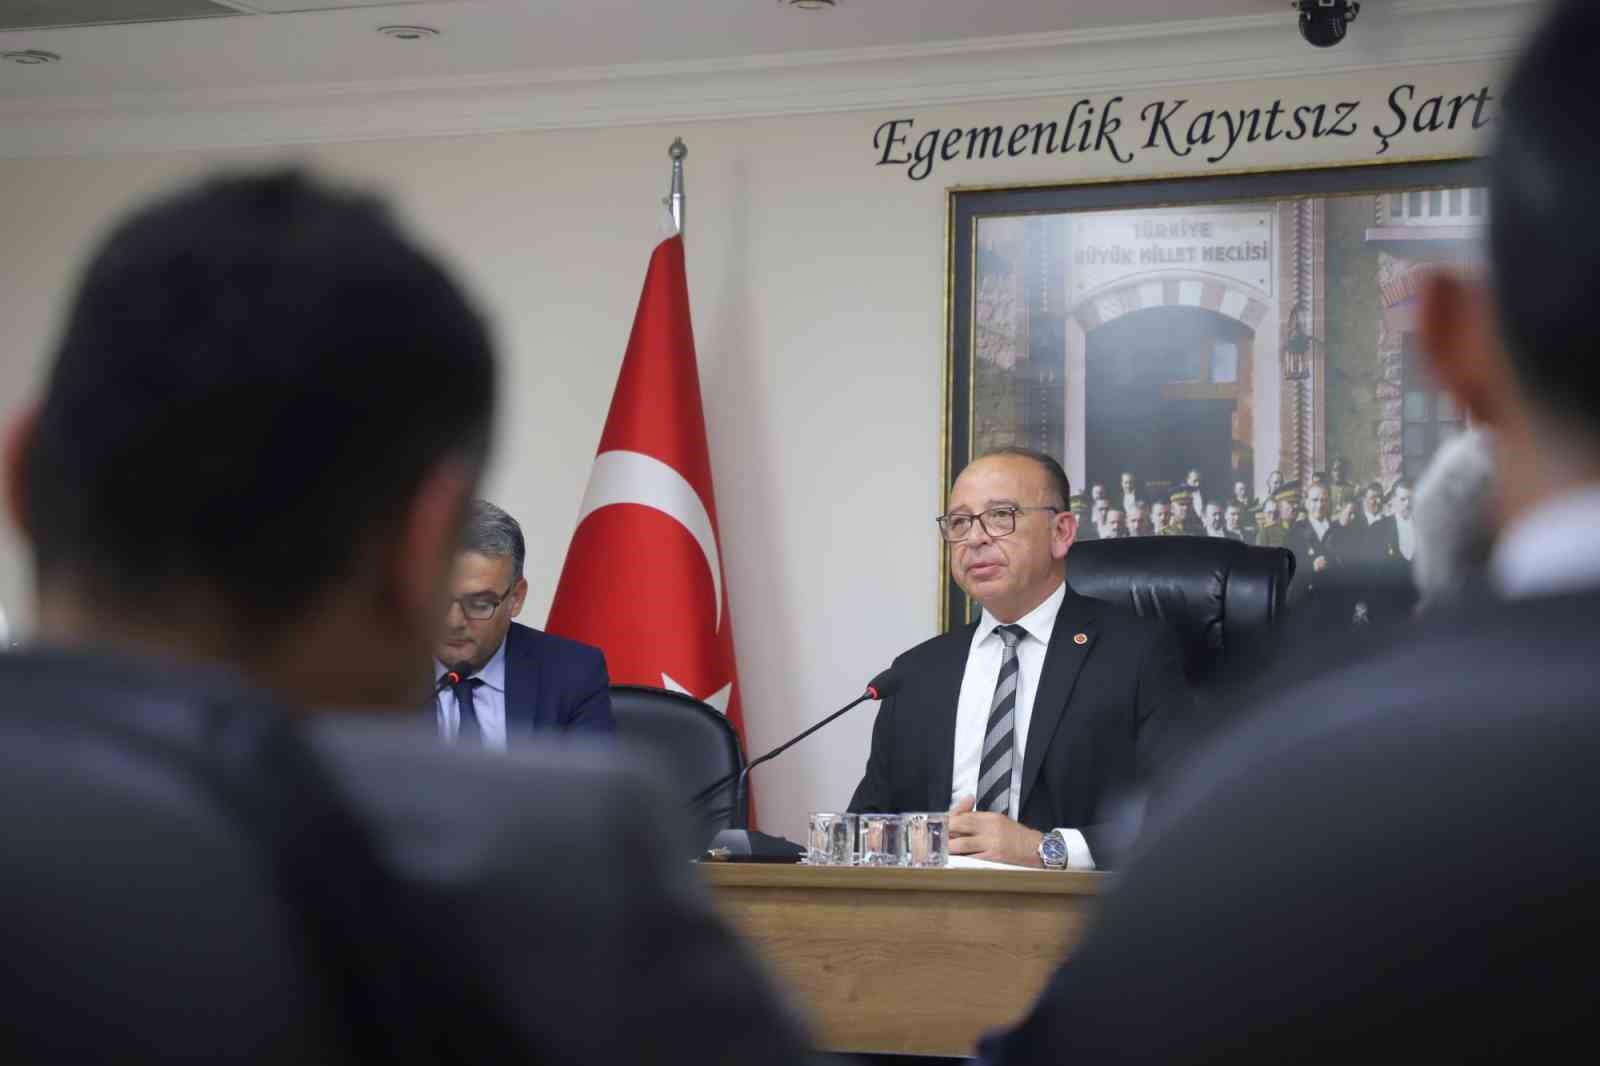 Turgutlu Belediyesi Mayıs Ayı Meclis Toplantısı gerçekleşti
